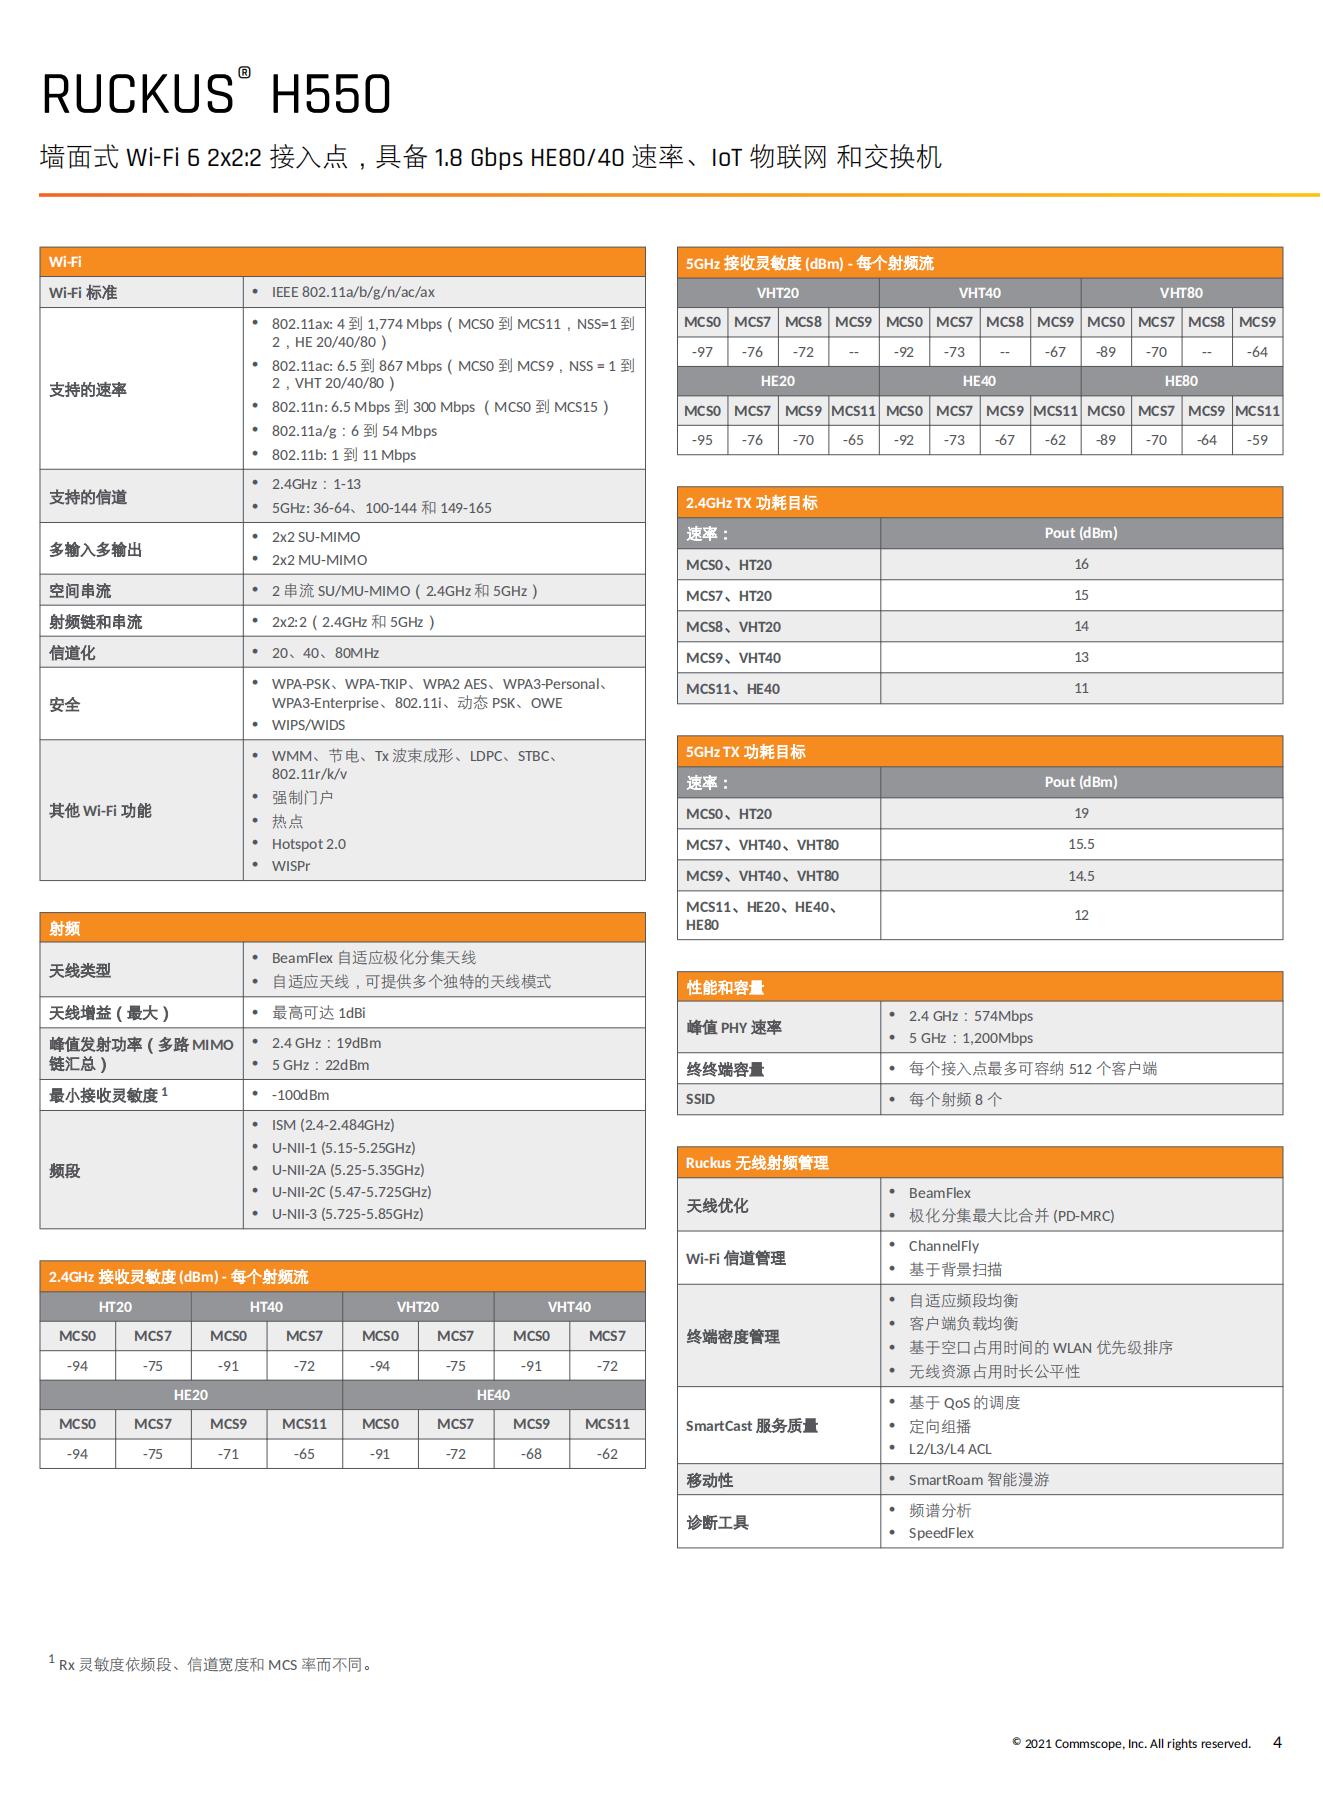 RUCKUS H550 Data Sheet - Chinese Simplified_03.jpg